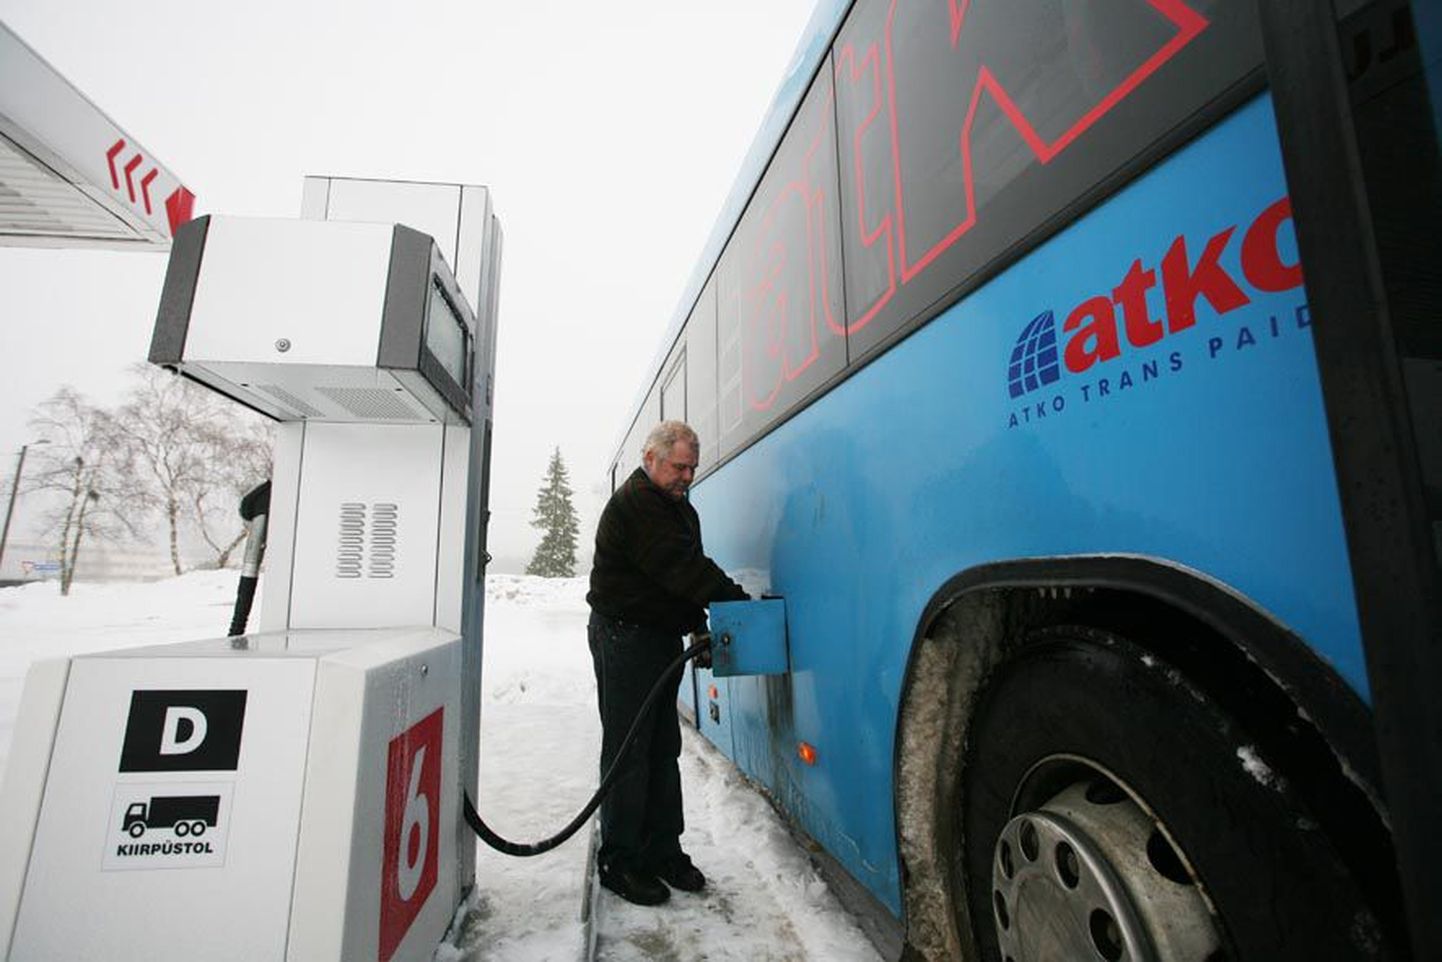 Atko bussijuht Andres Kurema peab kallist kütust varasemast rohkem paaki laskma, sest lumine talv paneb suured bussid ka ahnemalt diislikütust neelama.